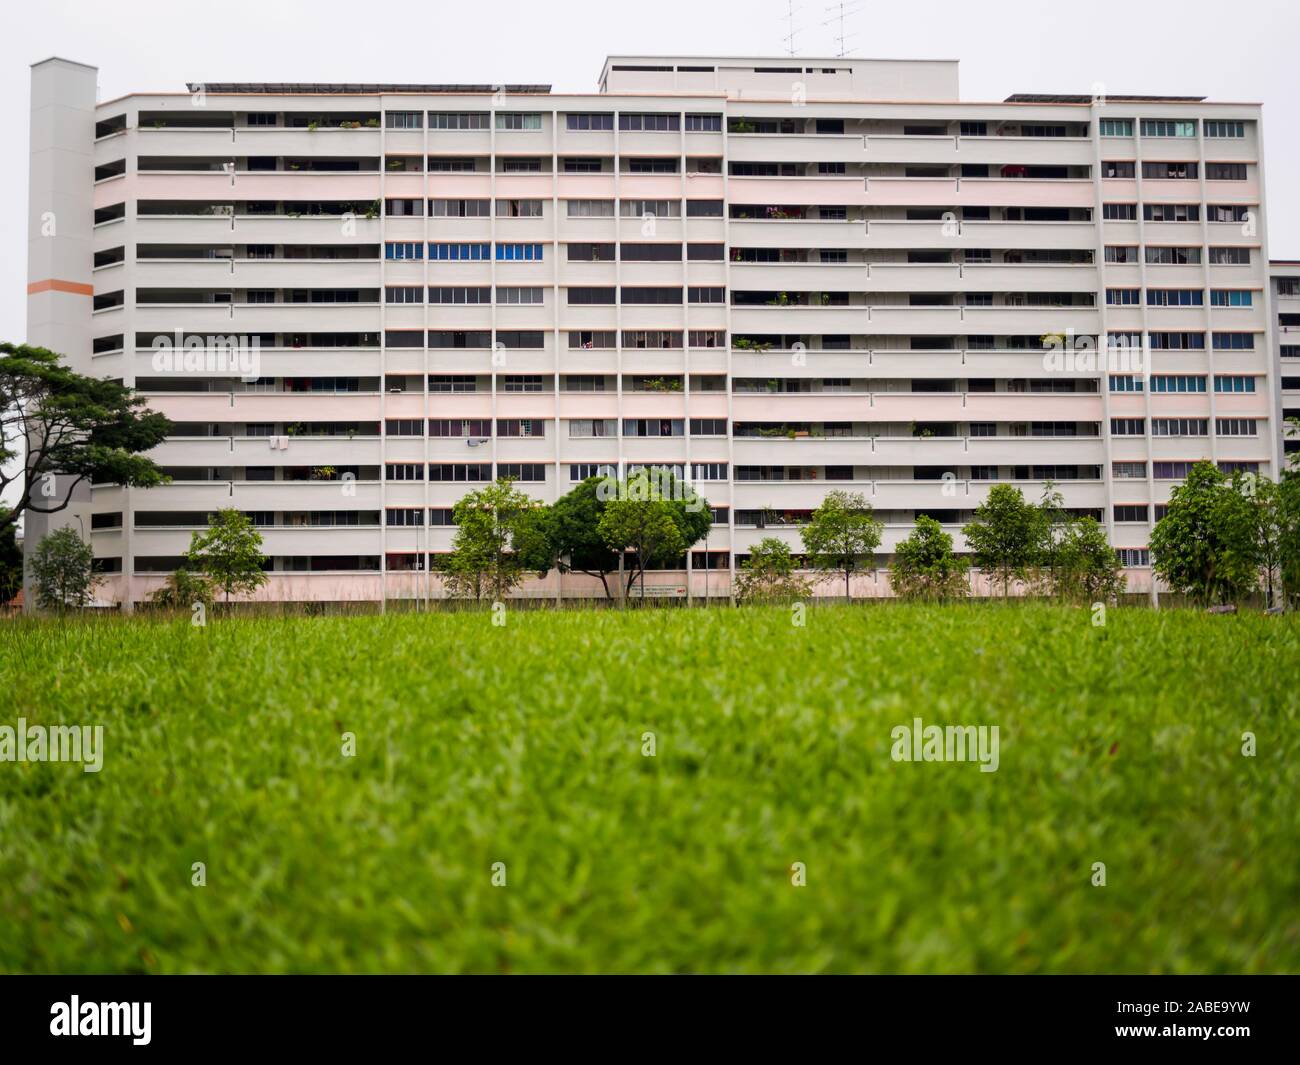 Singapur - 3. Mai 2019 - Eine alte Block der Regierung errichteten Sozialwohnungen Wohnungen (HDB Wohnungen) vor einem Gras bedeckte Feld in Singapur Stockfoto